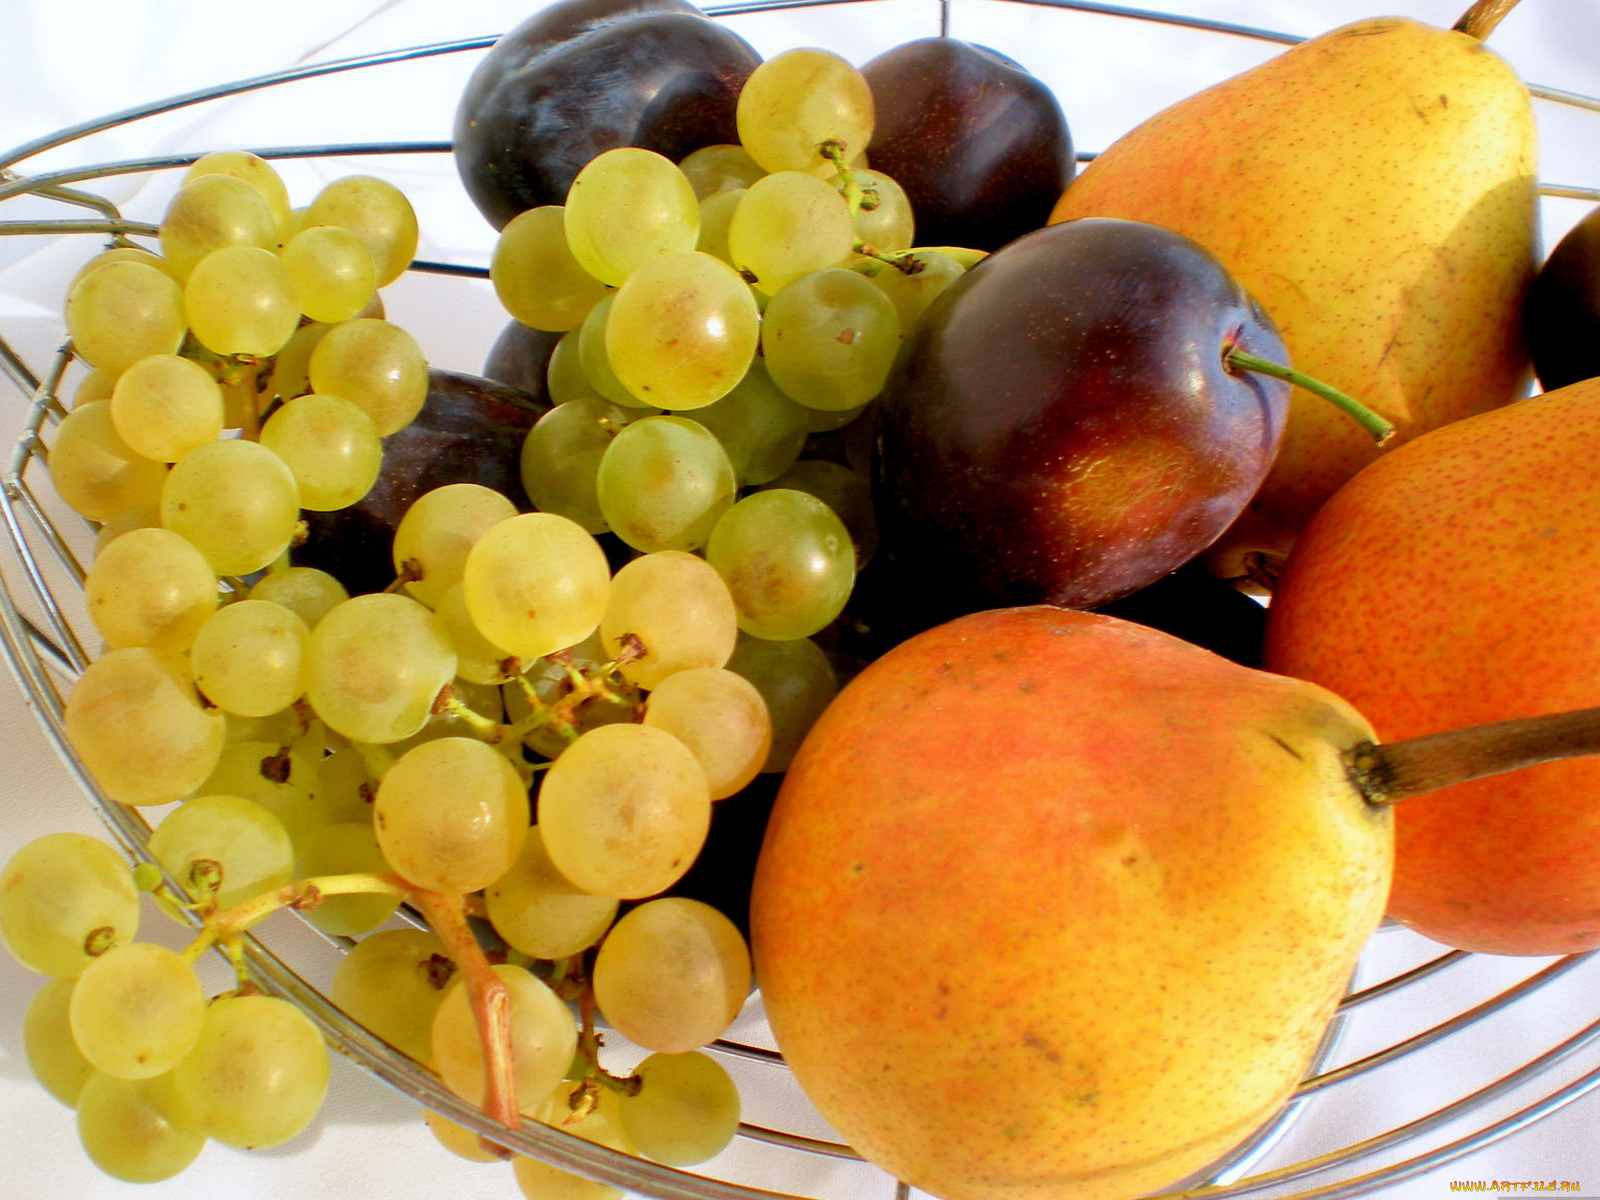 еда, фрукты, ягоды, виноград, груши, сливы